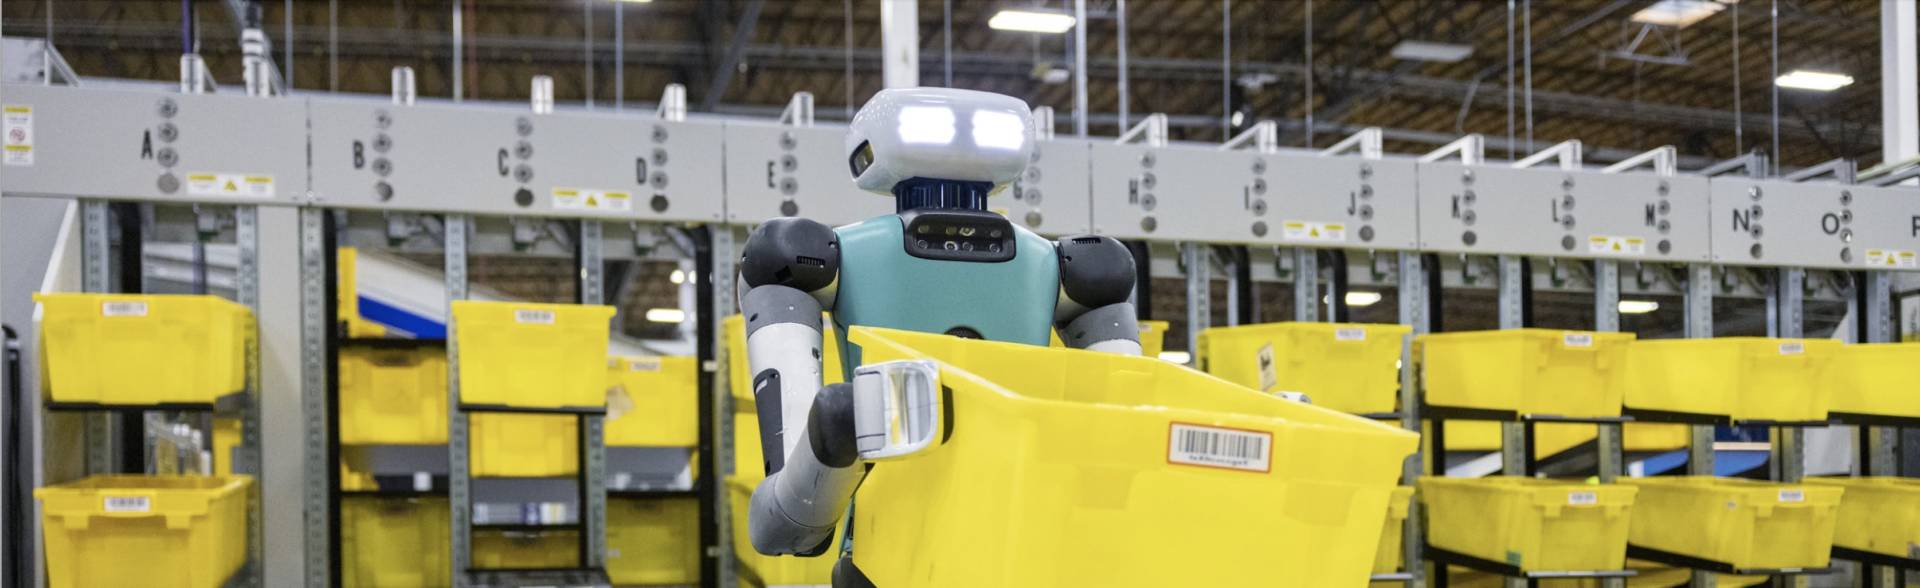 Il robot umanoide Amazon, si chiama Digit ed è già all’opera